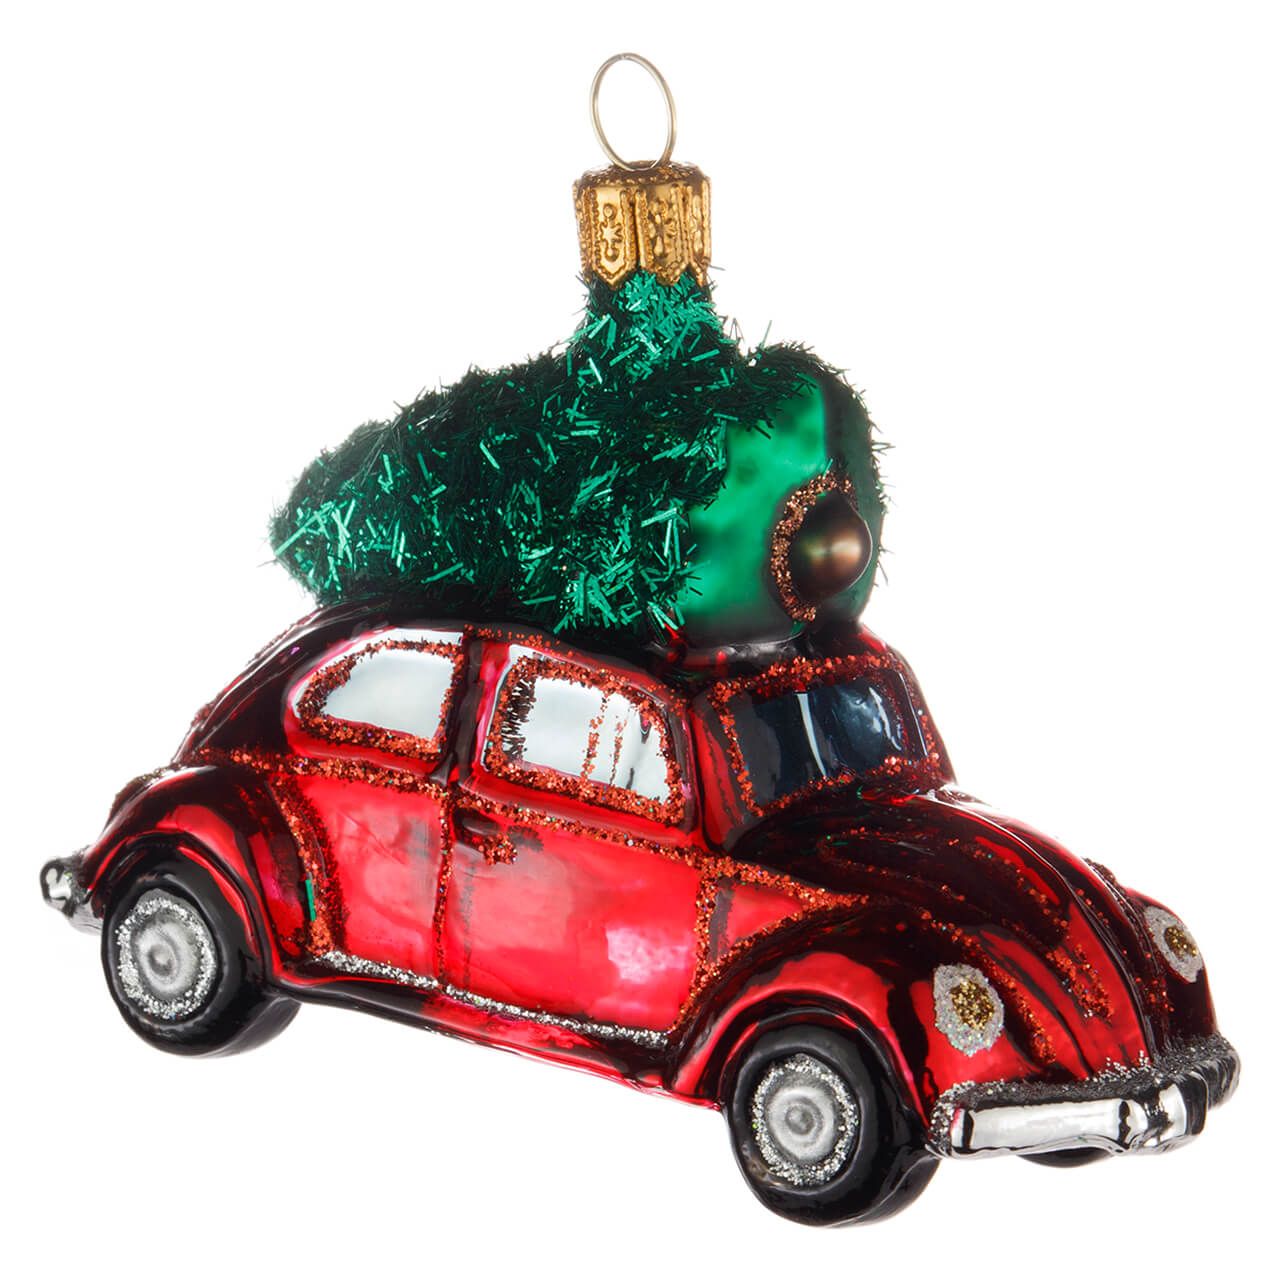 Rotes Auto Mit Weihnachtsbaum - KibrisPDR